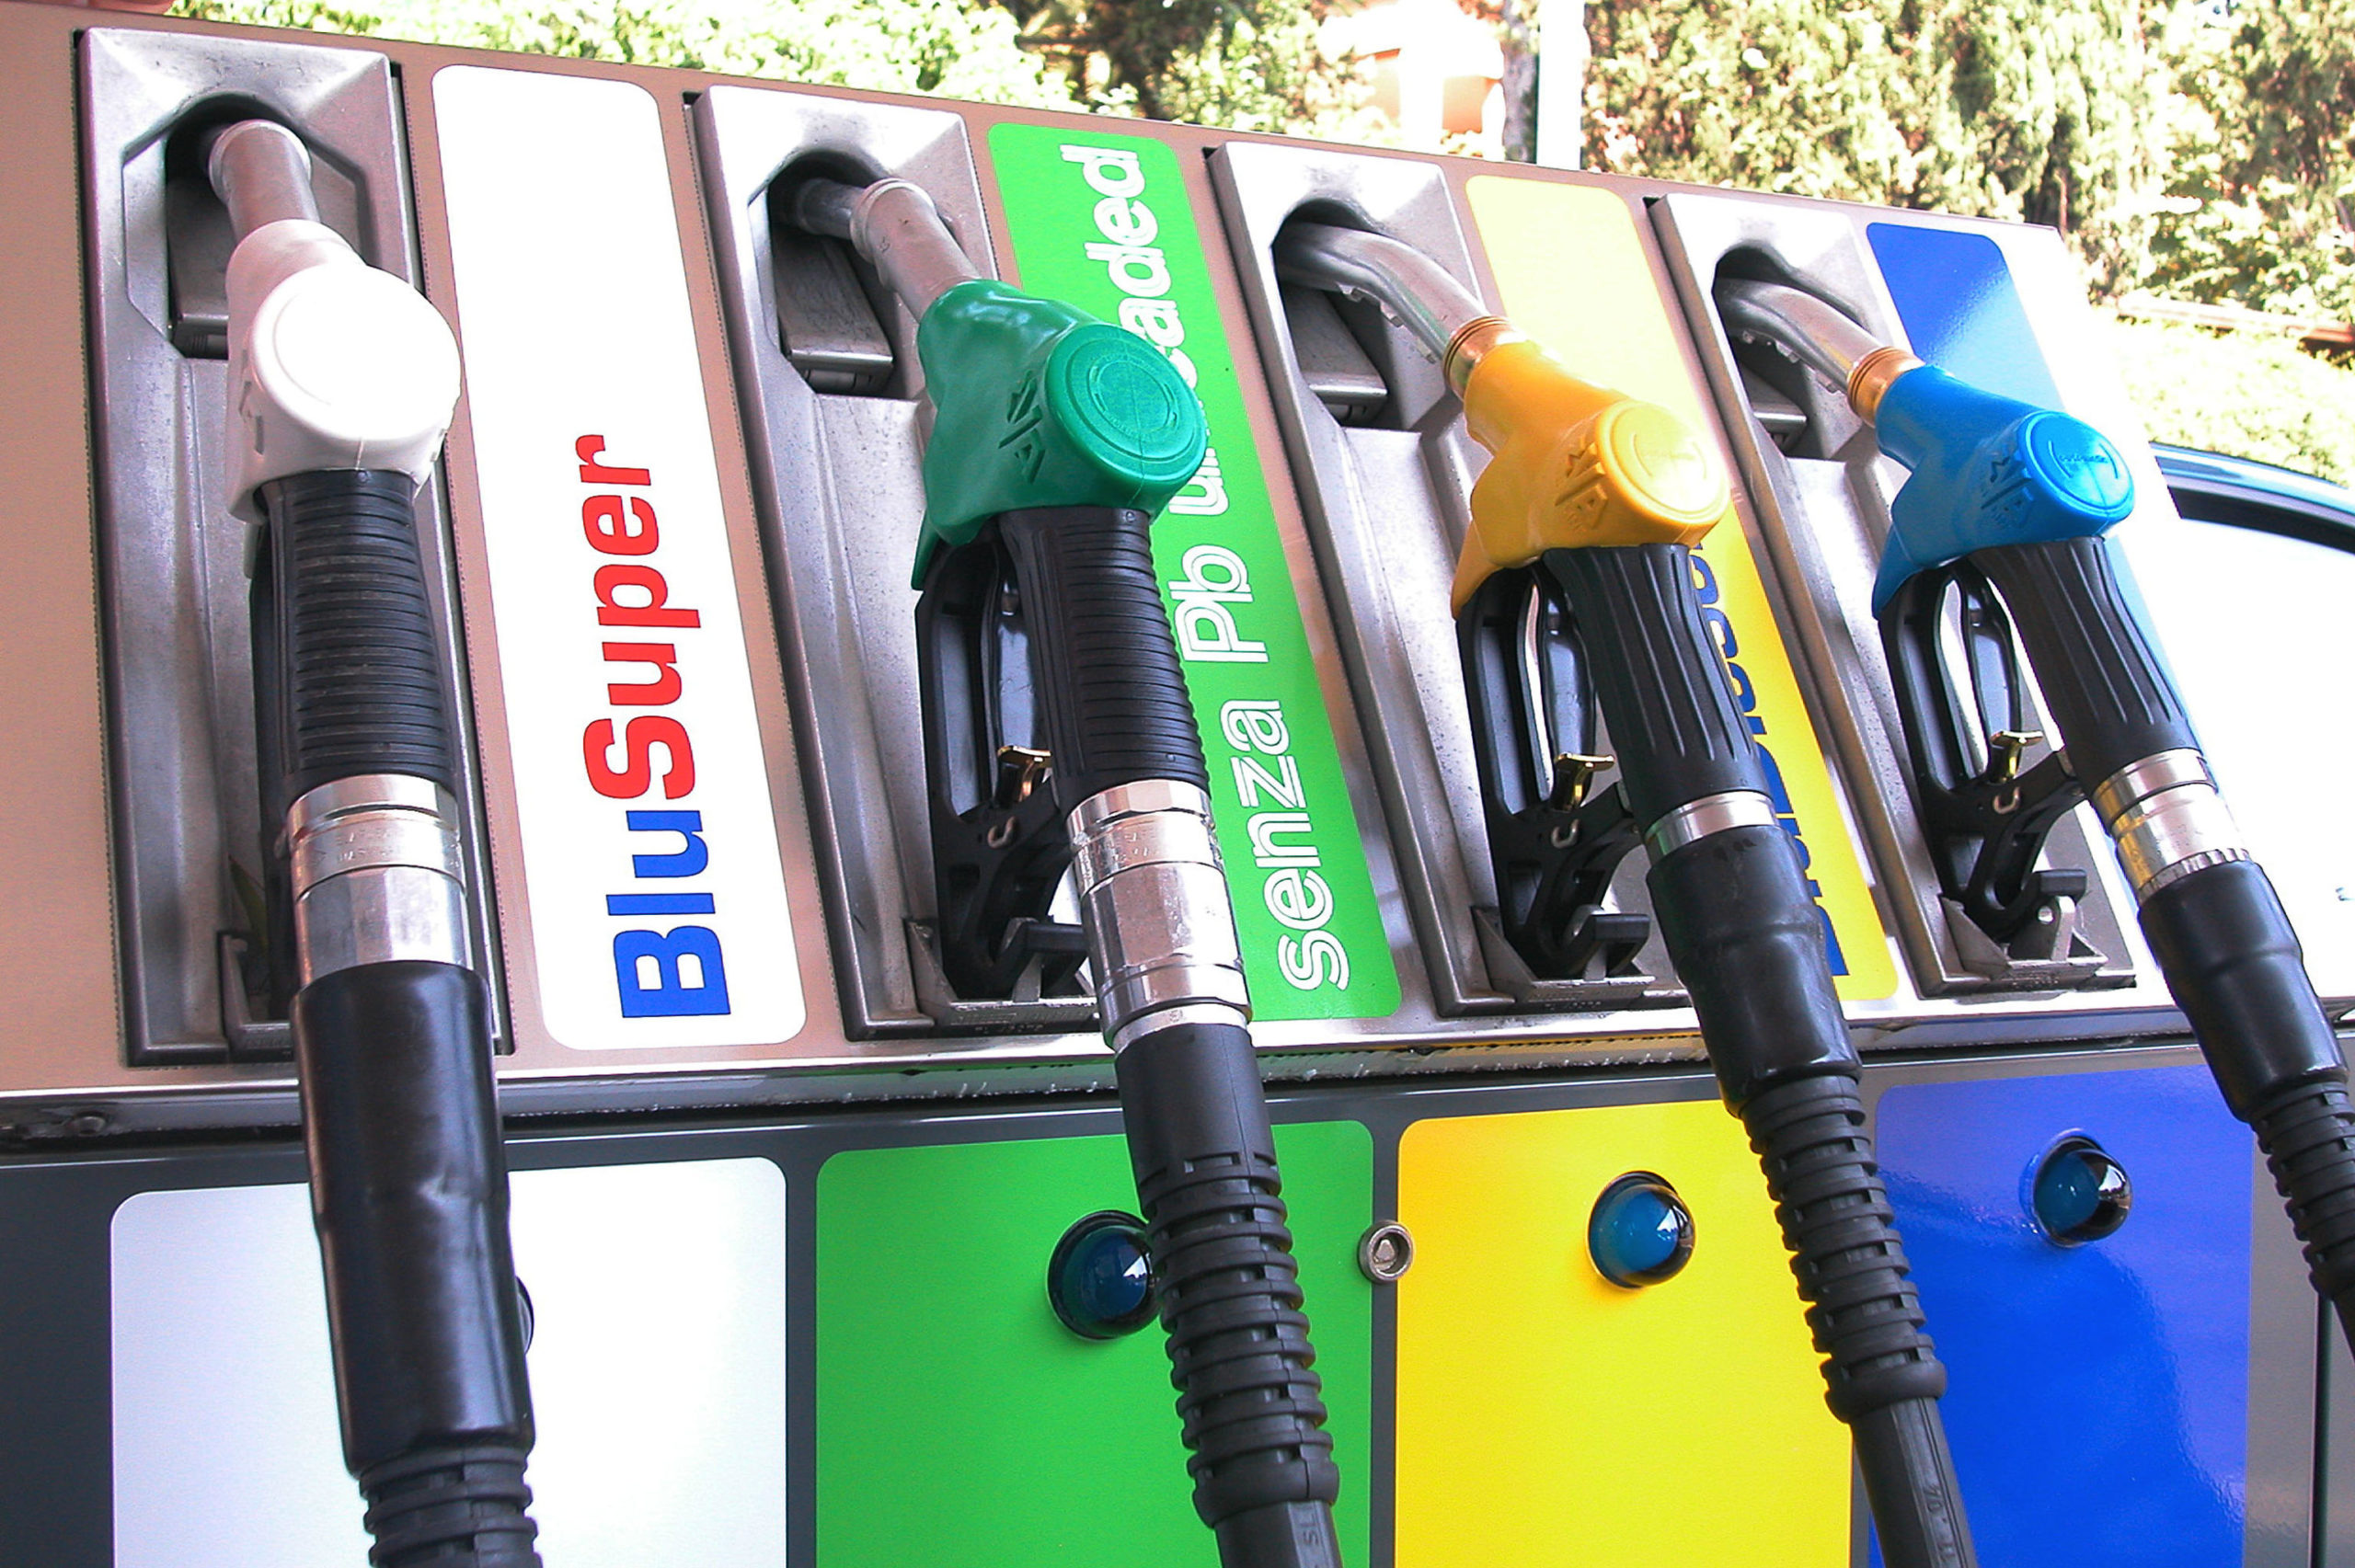 Faib, Italia leader in Europa per distributori di carburante. Ed anche per punti vendita di metano